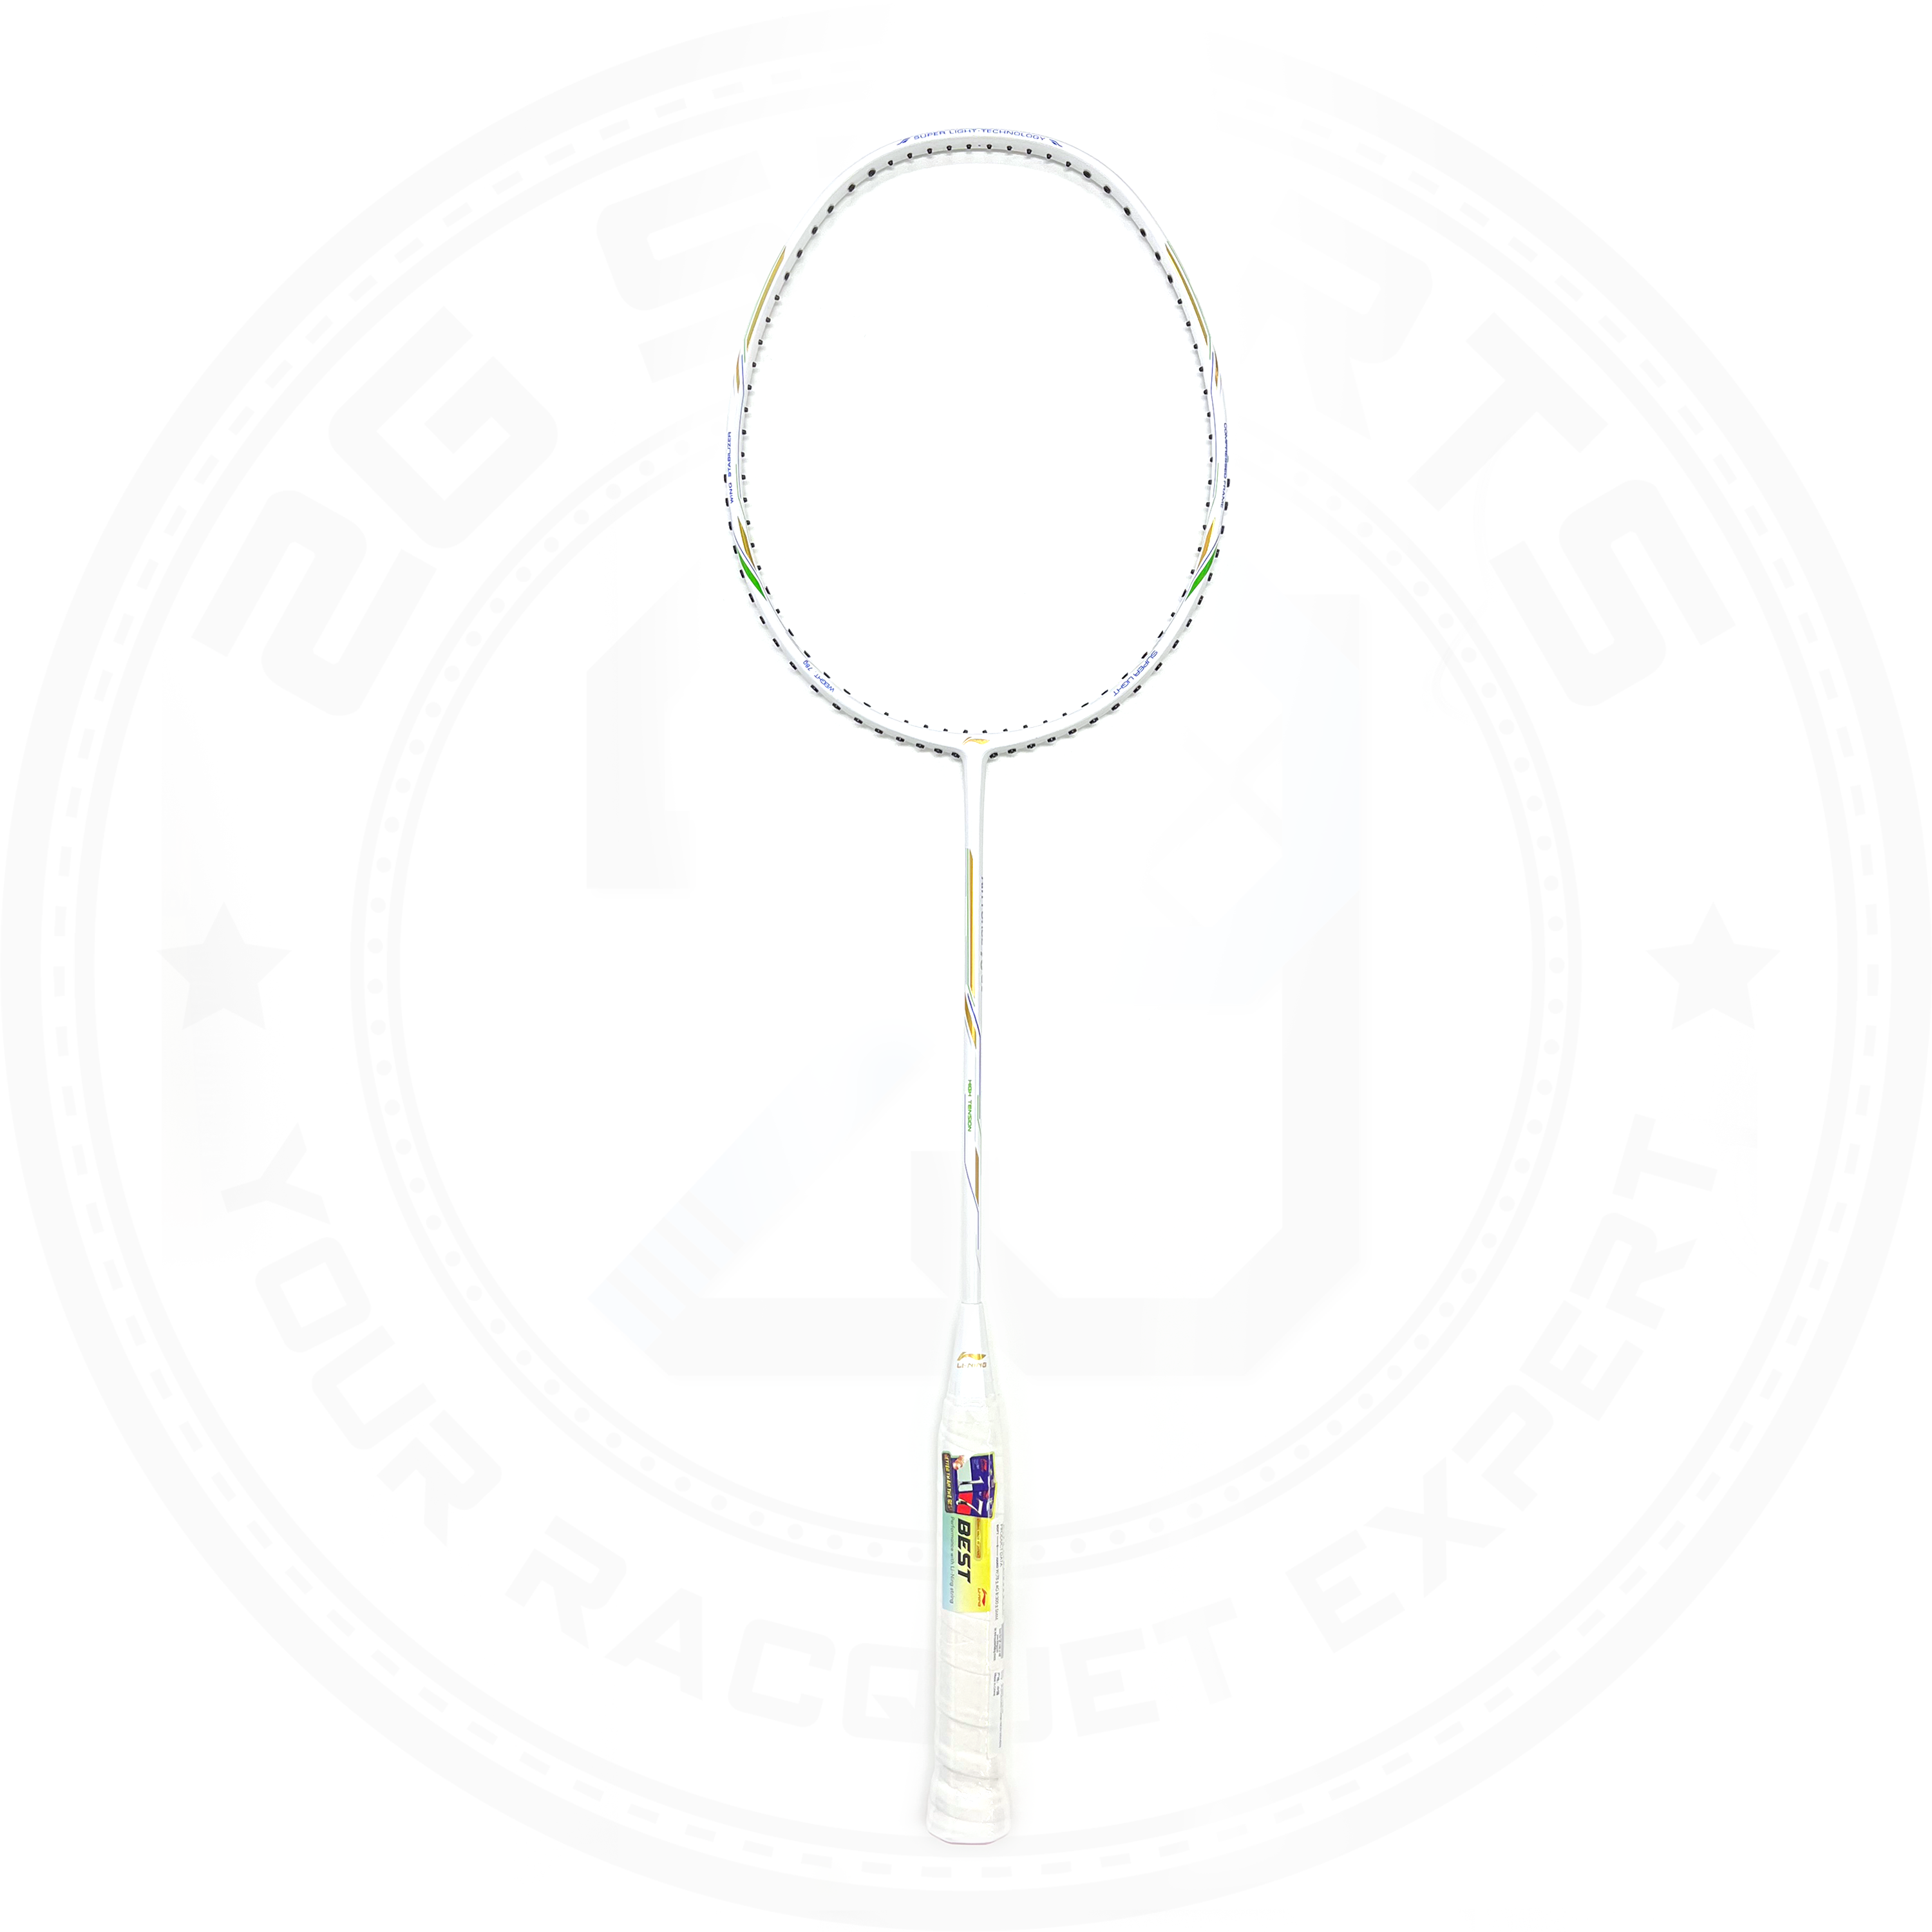 Li-Ning Air Force 78 G2 Flexible shaft Lightweight Badminton Racquet White 5U(79g)G6